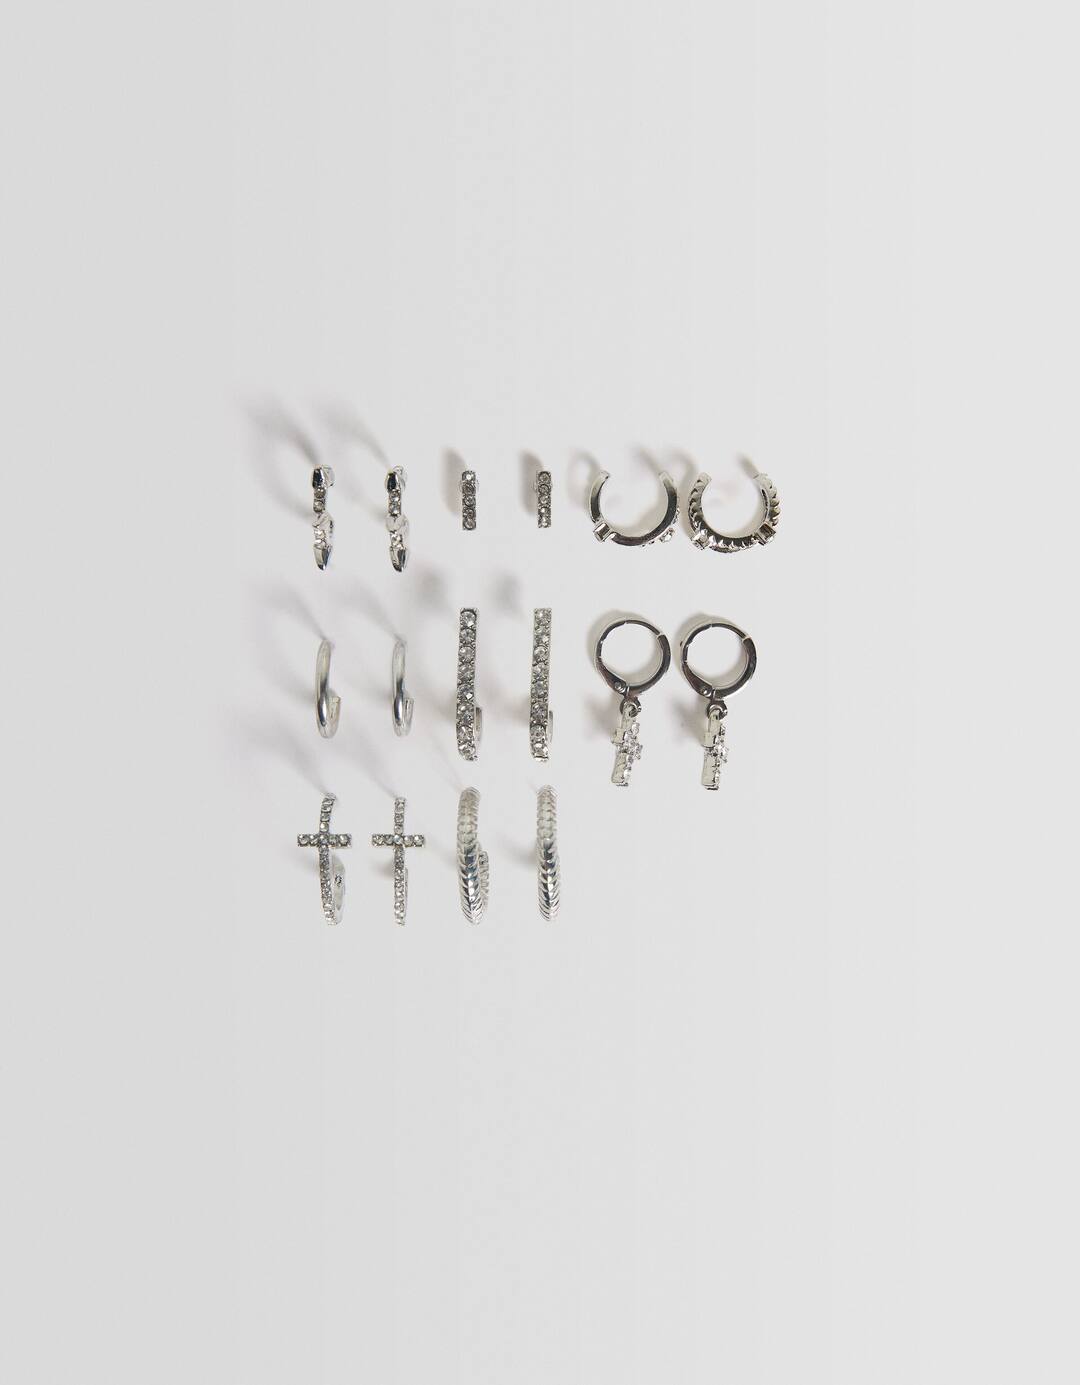 Set of 8 pairs of rhinestone cross earrings